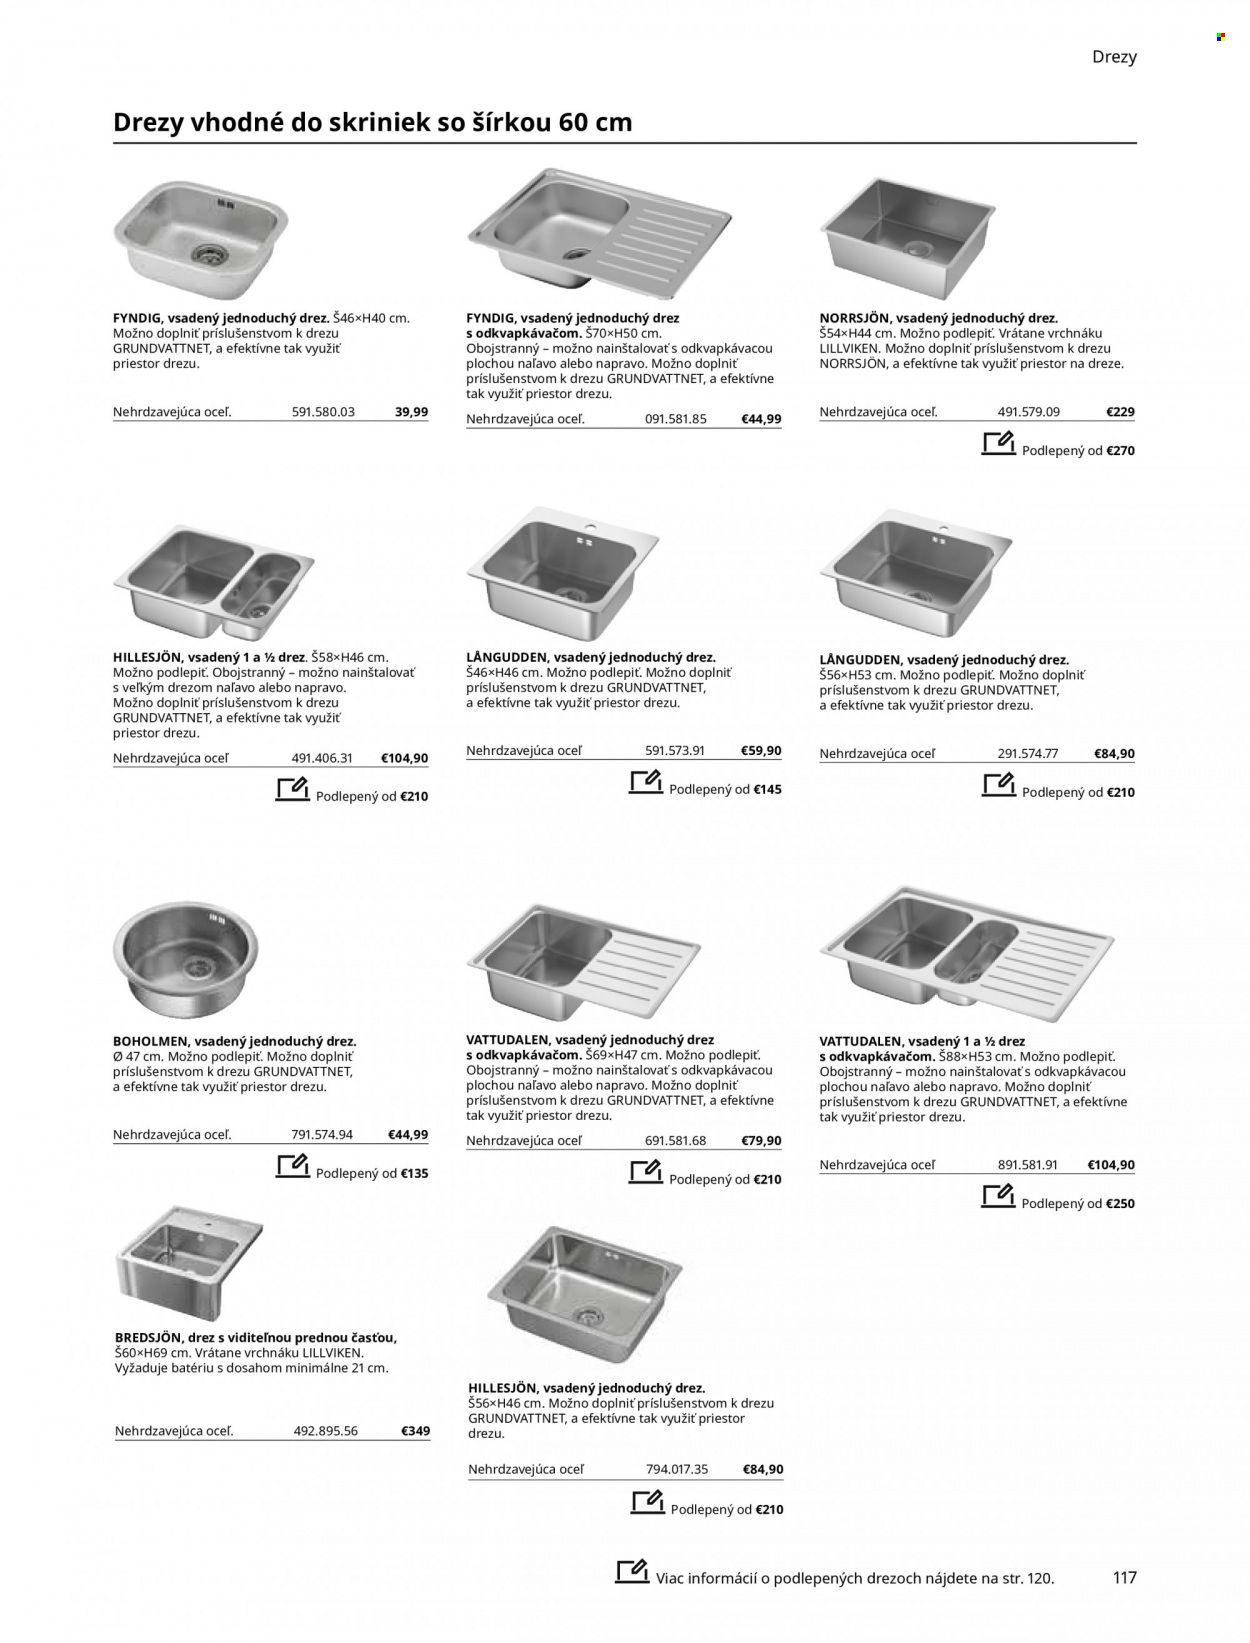 thumbnail - Leták IKEA - Produkty v akcii - drez. Strana 117.